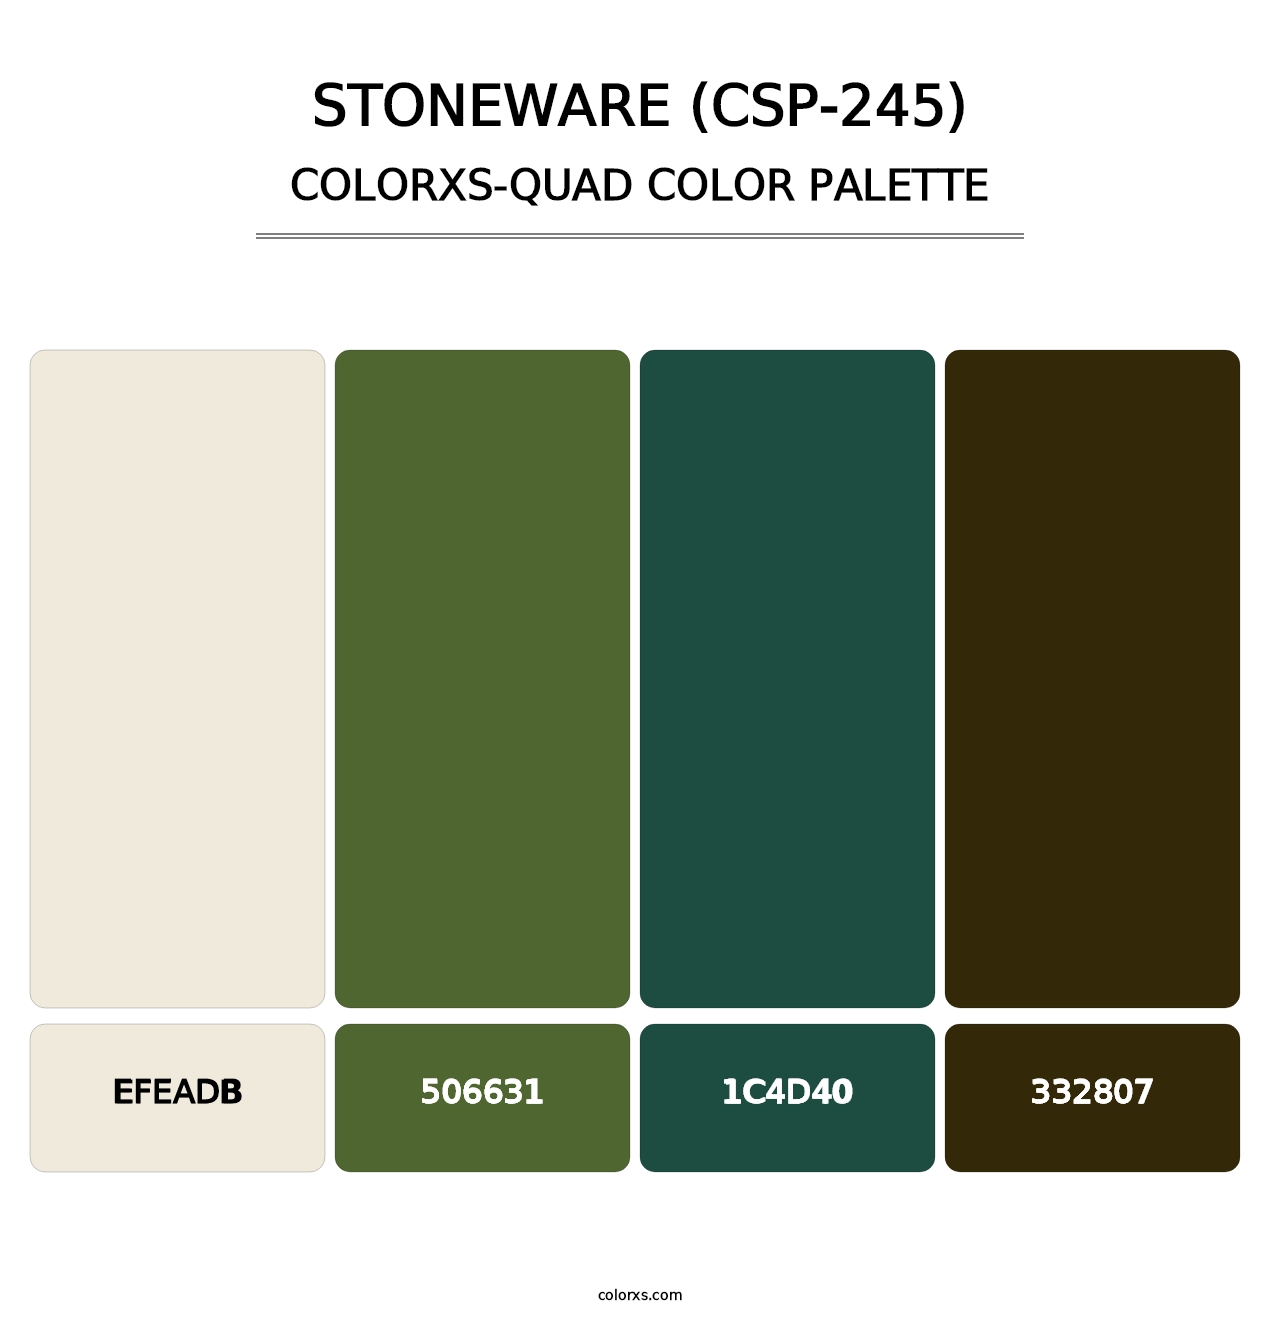 Stoneware (CSP-245) - Colorxs Quad Palette